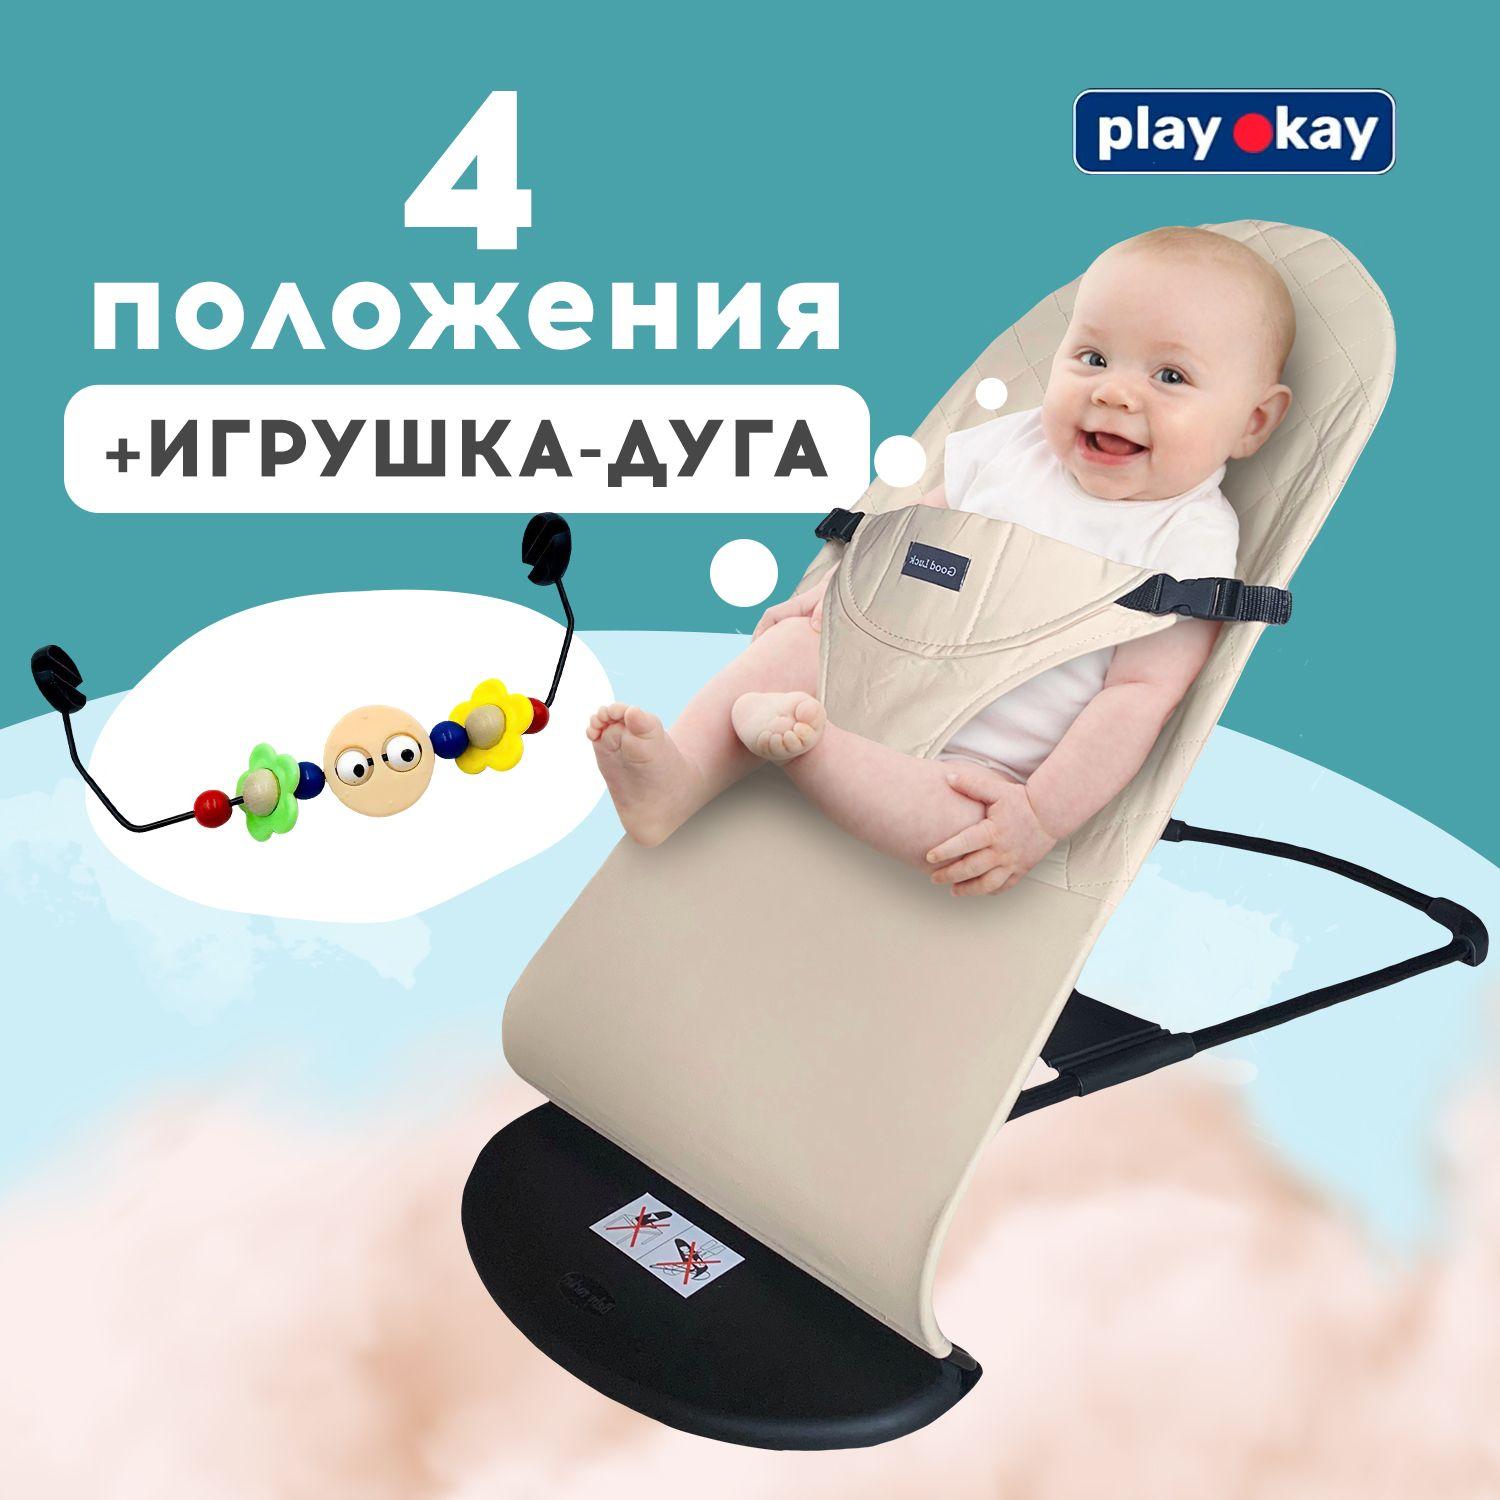 play okay | Шезлонг для новорожденных, детское кресло качалка Play Okay с развивающей игрушкой дугой малышу до 15 кг, Материал: тарилен, метал, полипропилен / 78 х 40 х 56 см, Бежевый